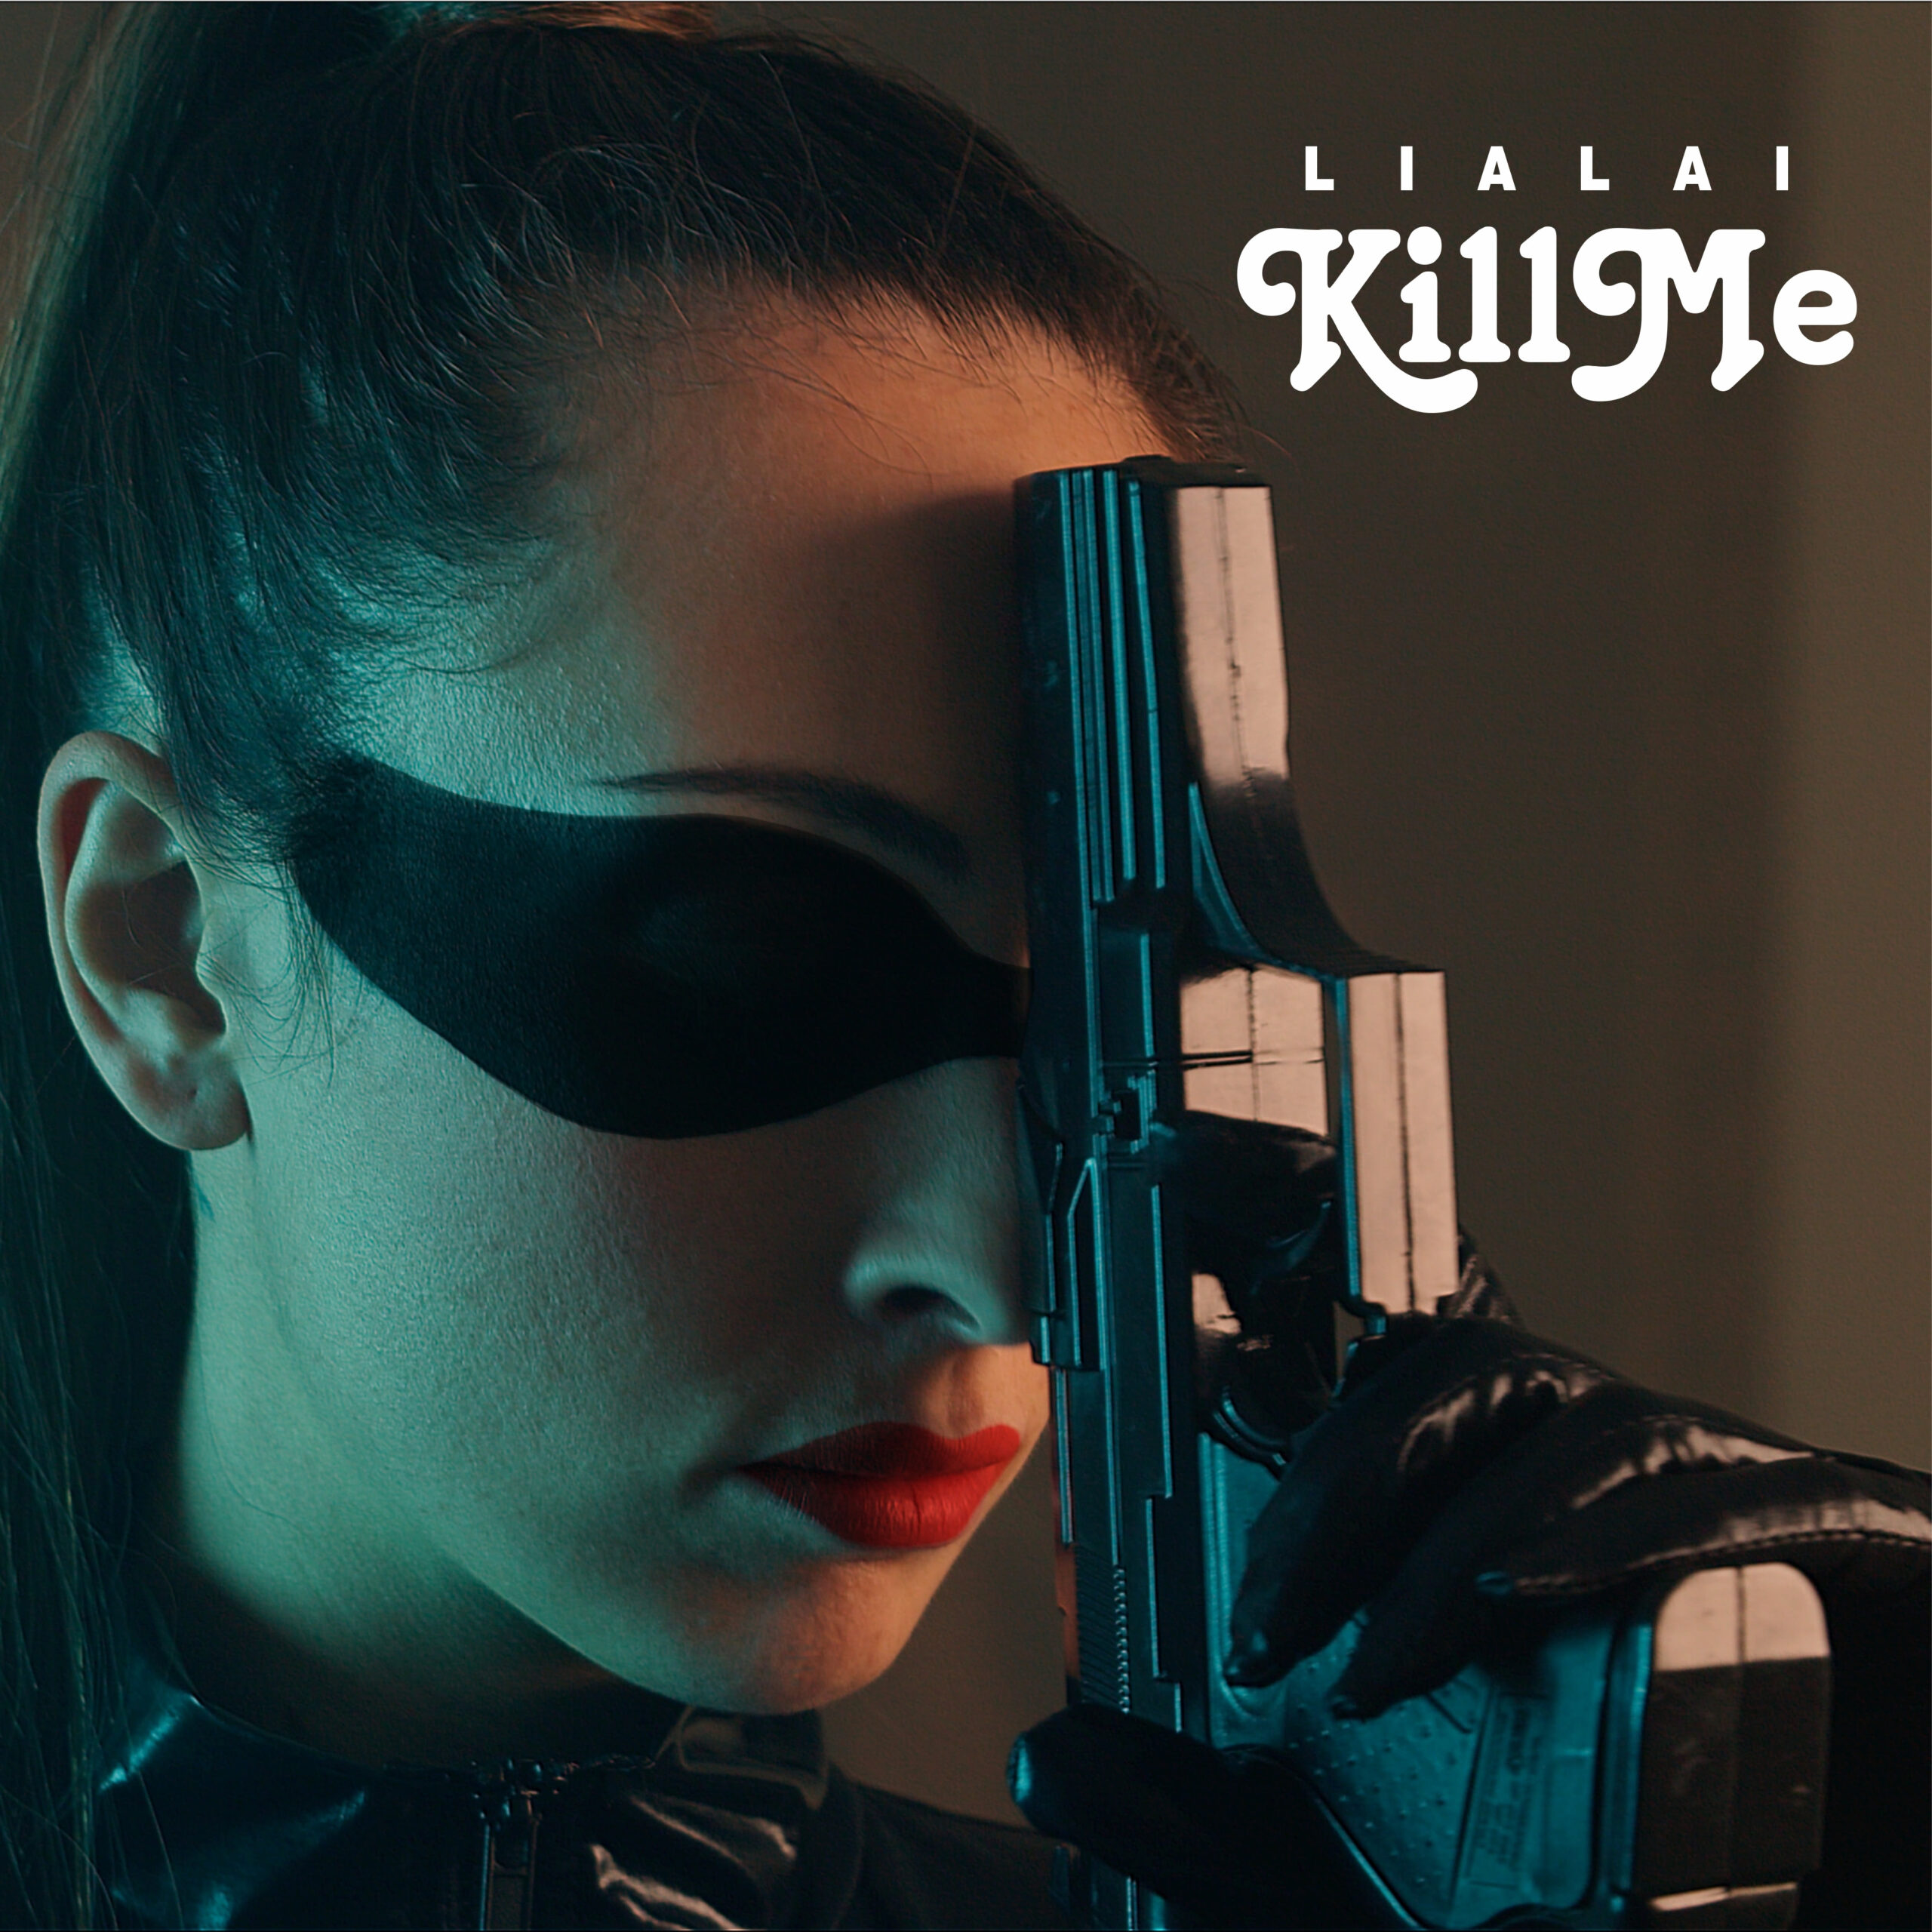 Da venerdì 26 febbraio sarà disponibile in rotazione radiofonica e su tutte le piattaforme digitali “Kill me”, il nuovo singolo di Lialai